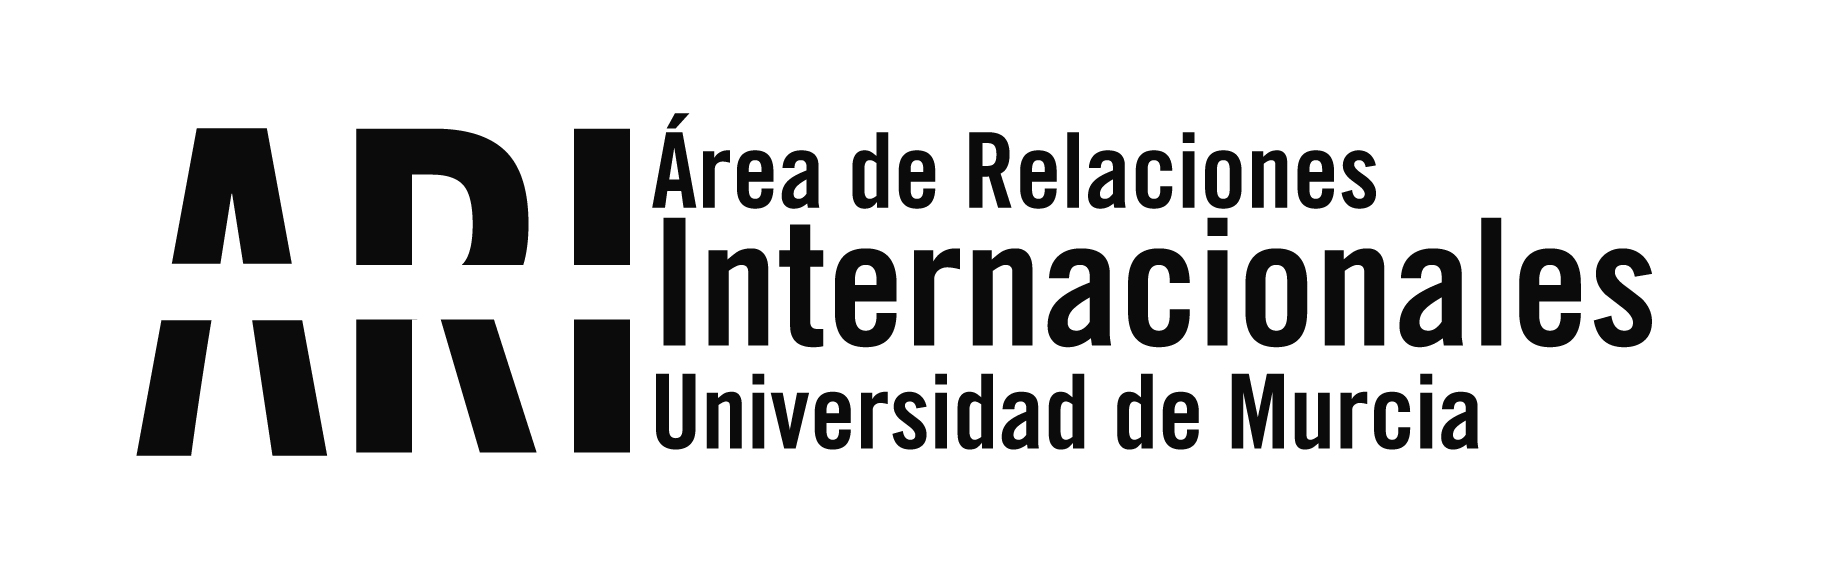 Los socios del proyecto Erasmus+ DALI para el desarrollo y mejora de la competencia de datos de los ciudadanos se reúnen en Murcia - Área de Relaciones Internacionales